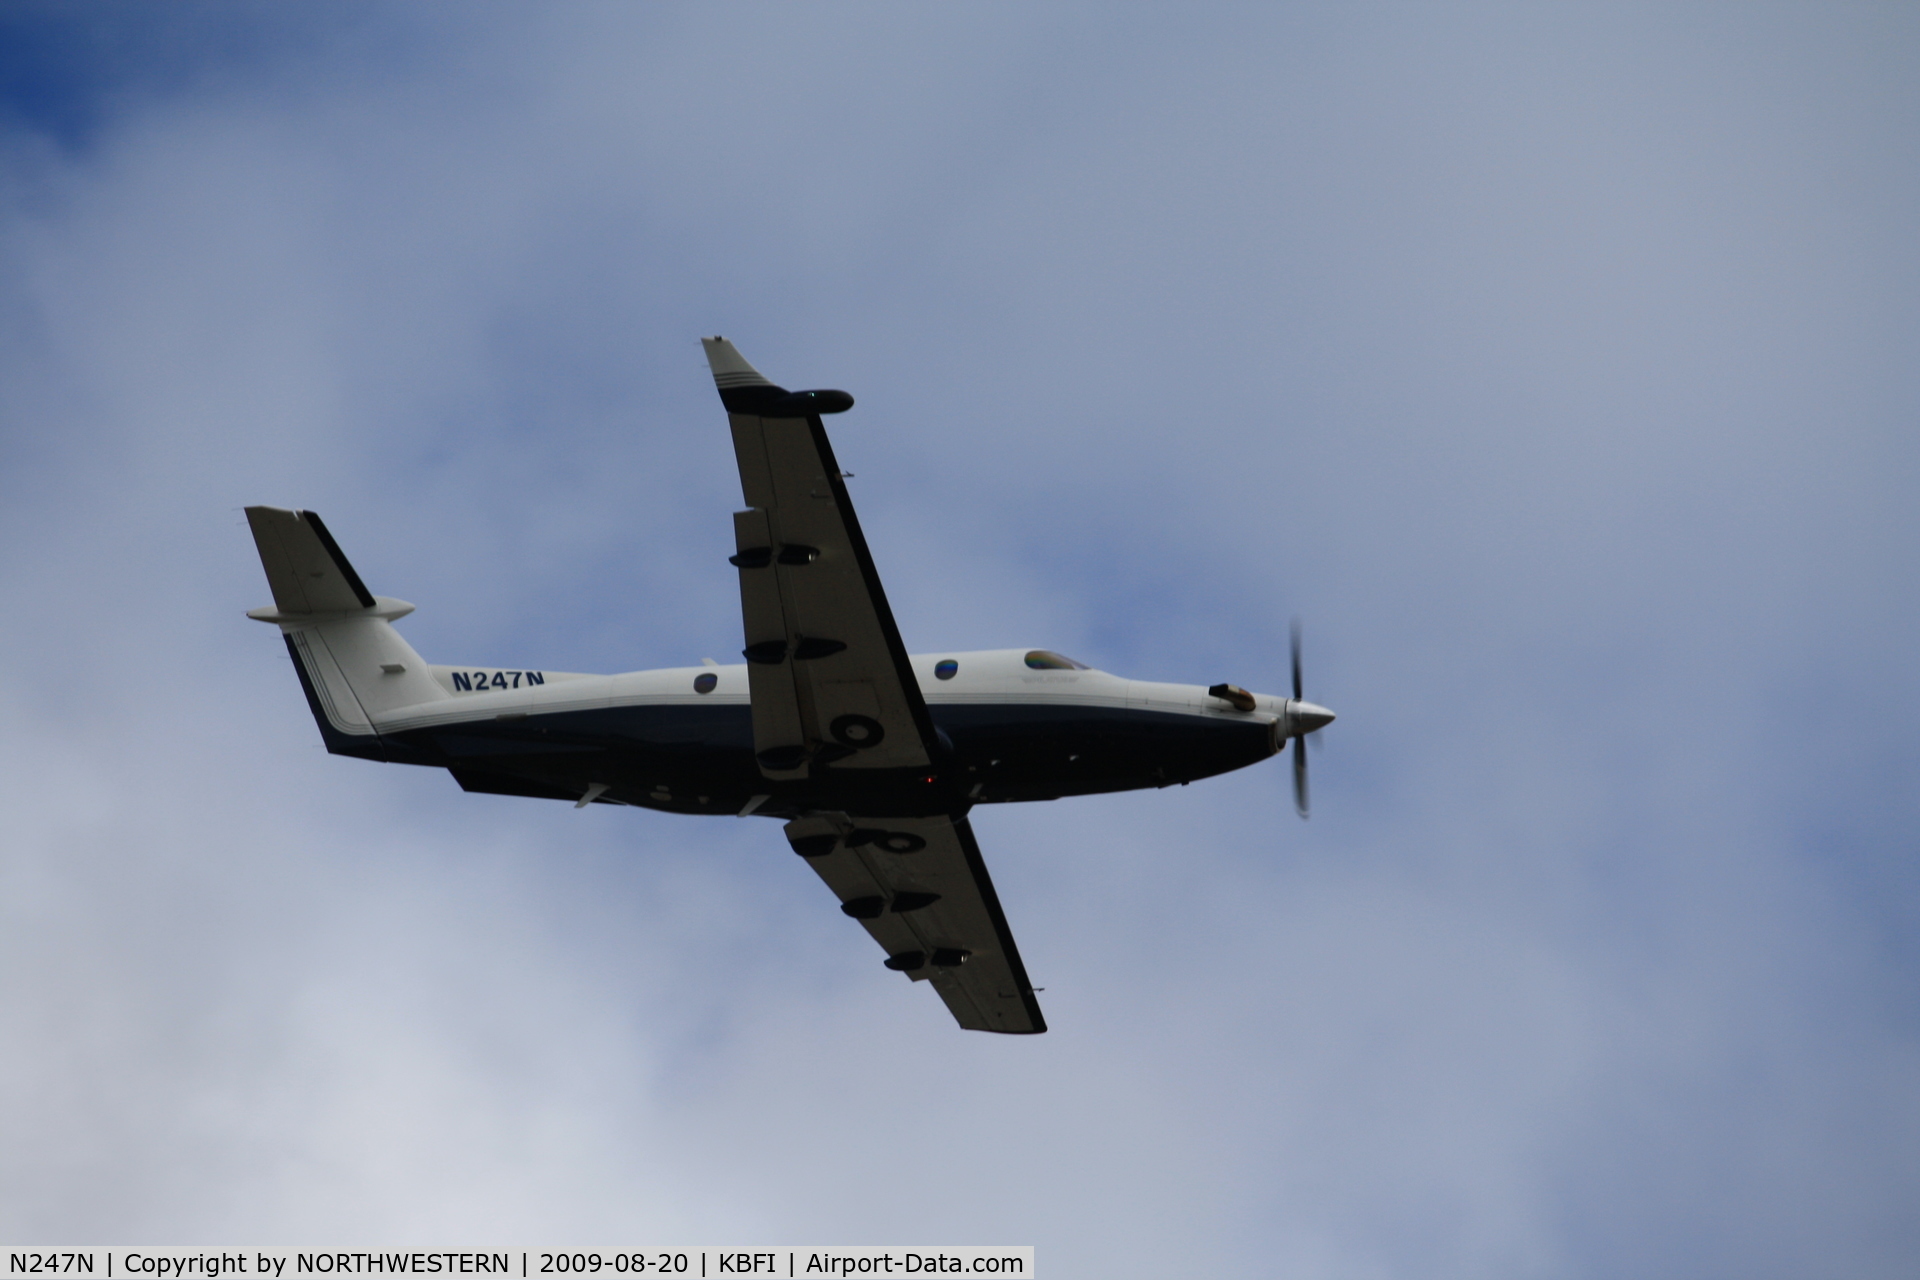 N247N, 2001 Pilatus PC-12/45 C/N 414, SEATTLE-VANCOUVER